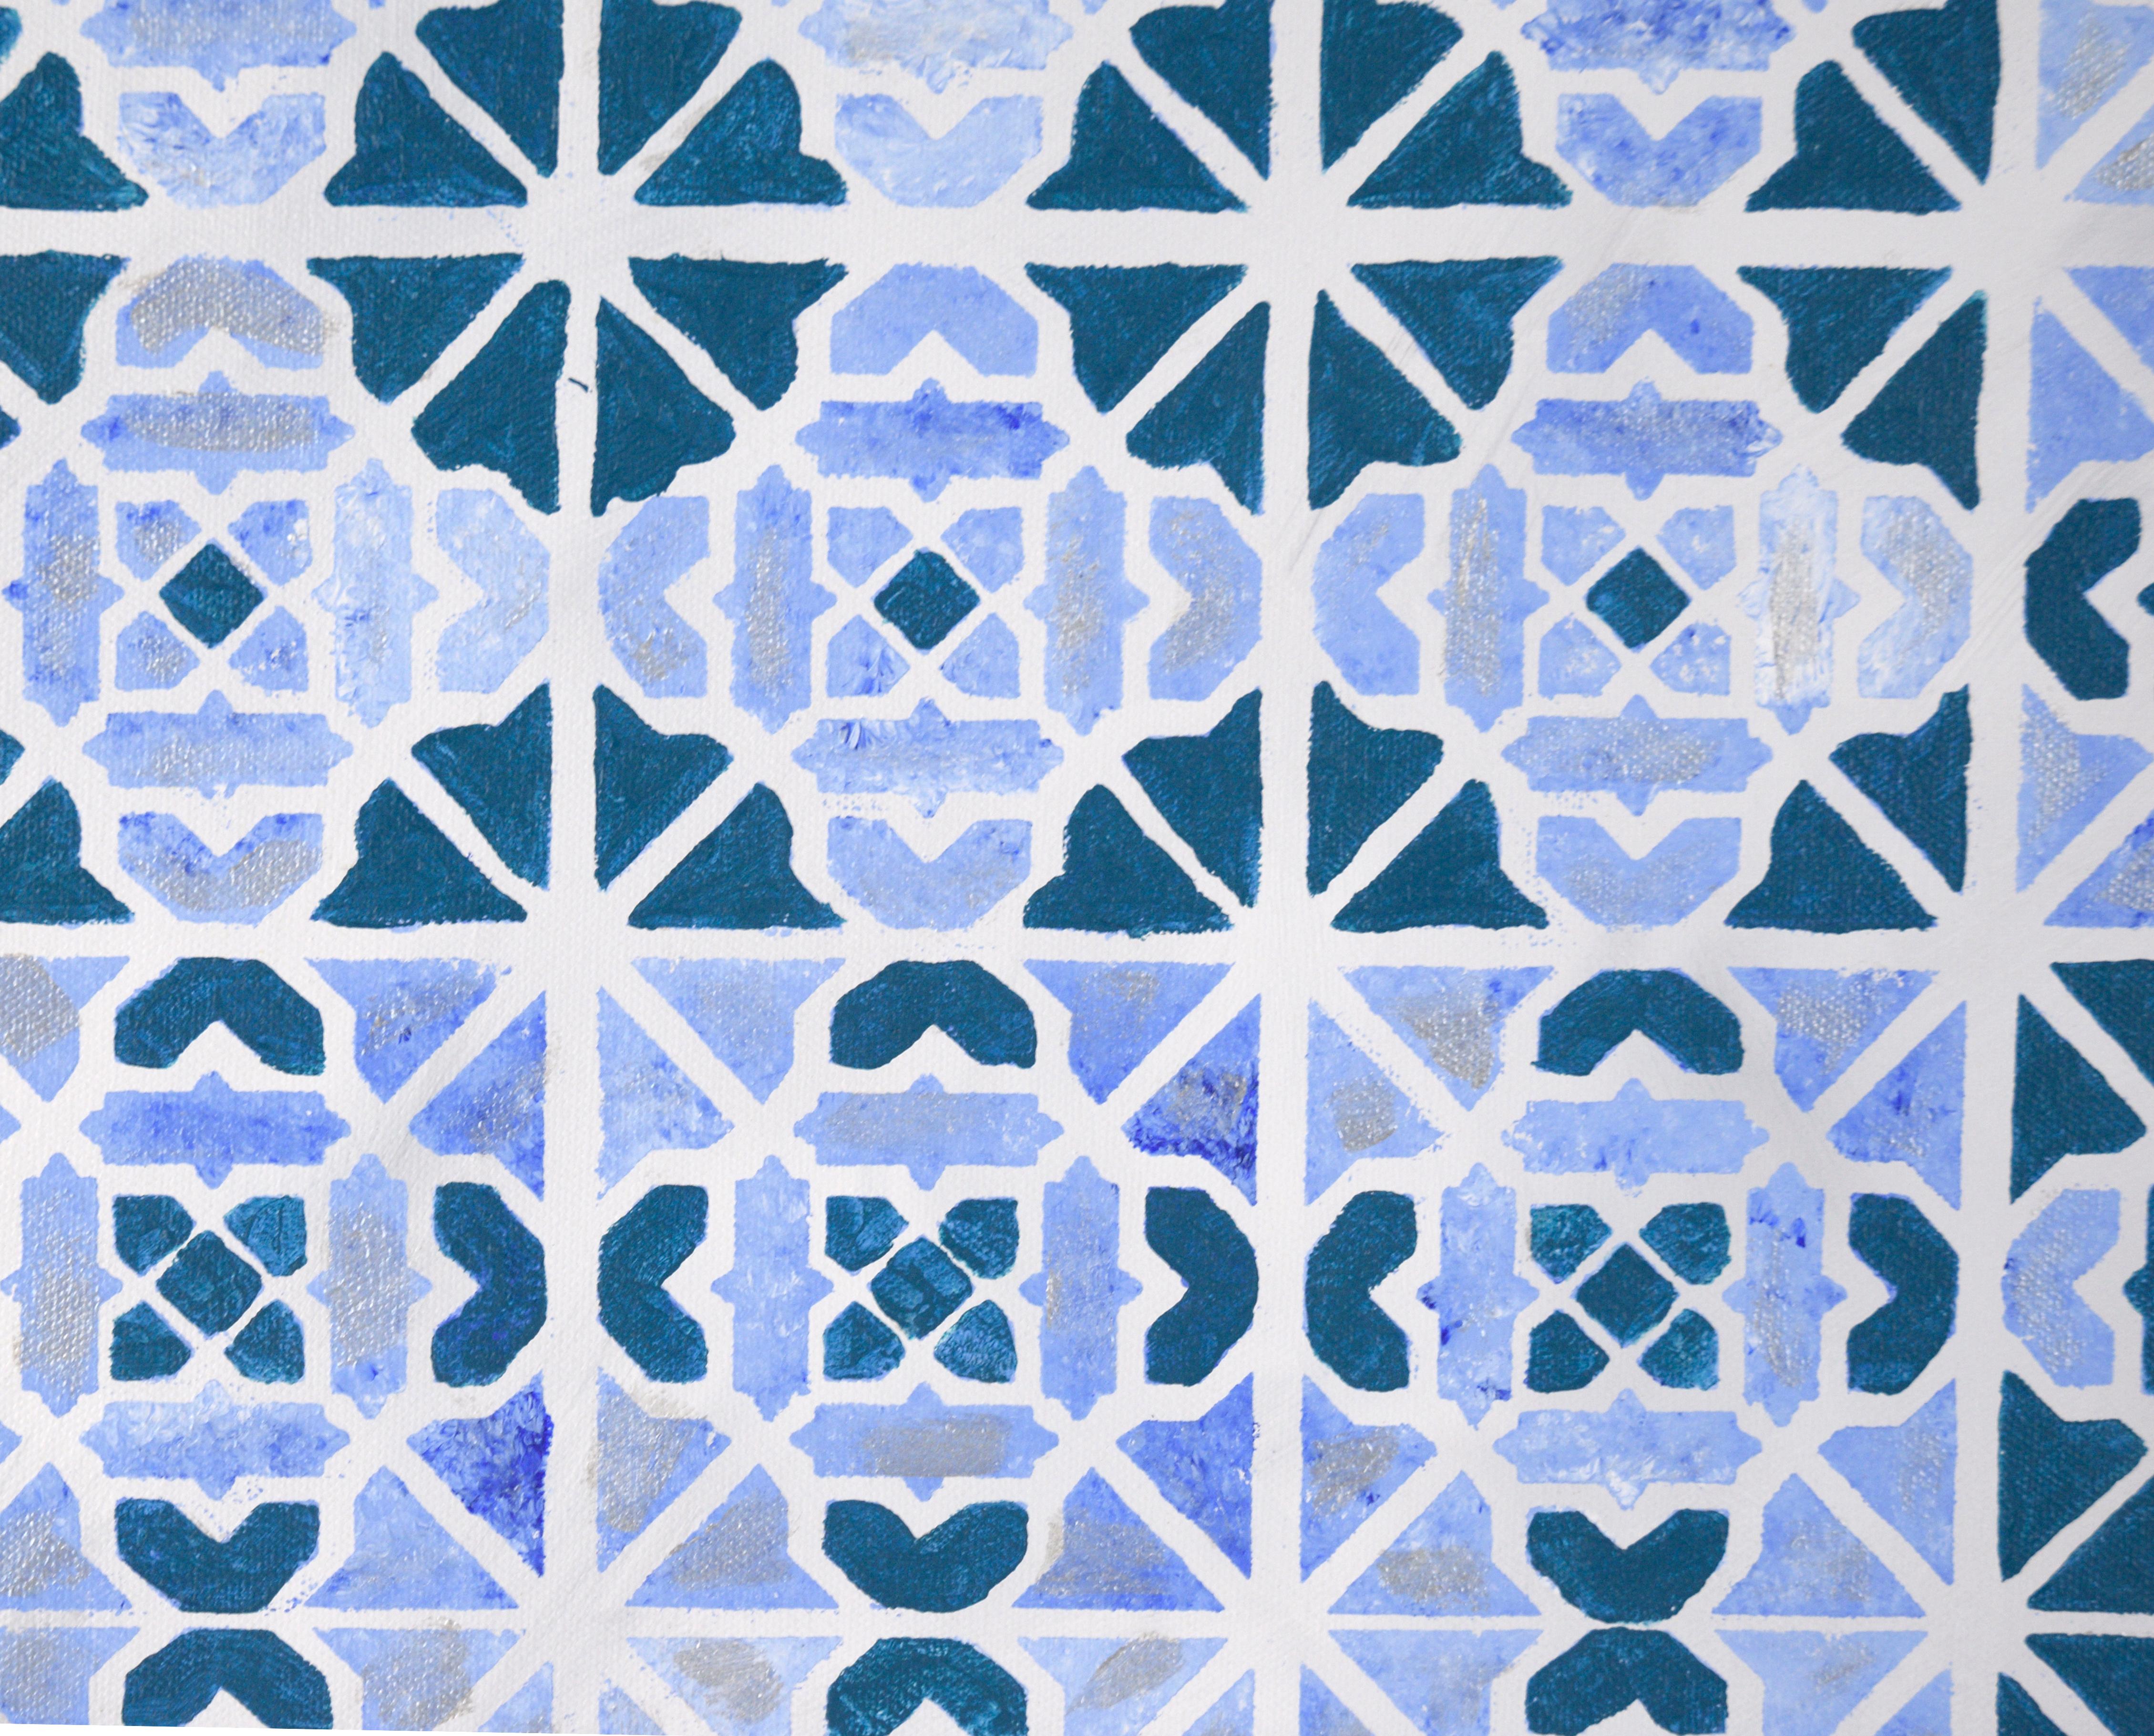 Op-Art - Motif géométrique abstrait en carreaux bleus et argentés - Acrylique sur toile

Op Art géométrique en bleu et argent d'un artiste inconnu. Il existe quatre variations distinctes d'un motif géométrique, comme celui que l'on trouve sur les